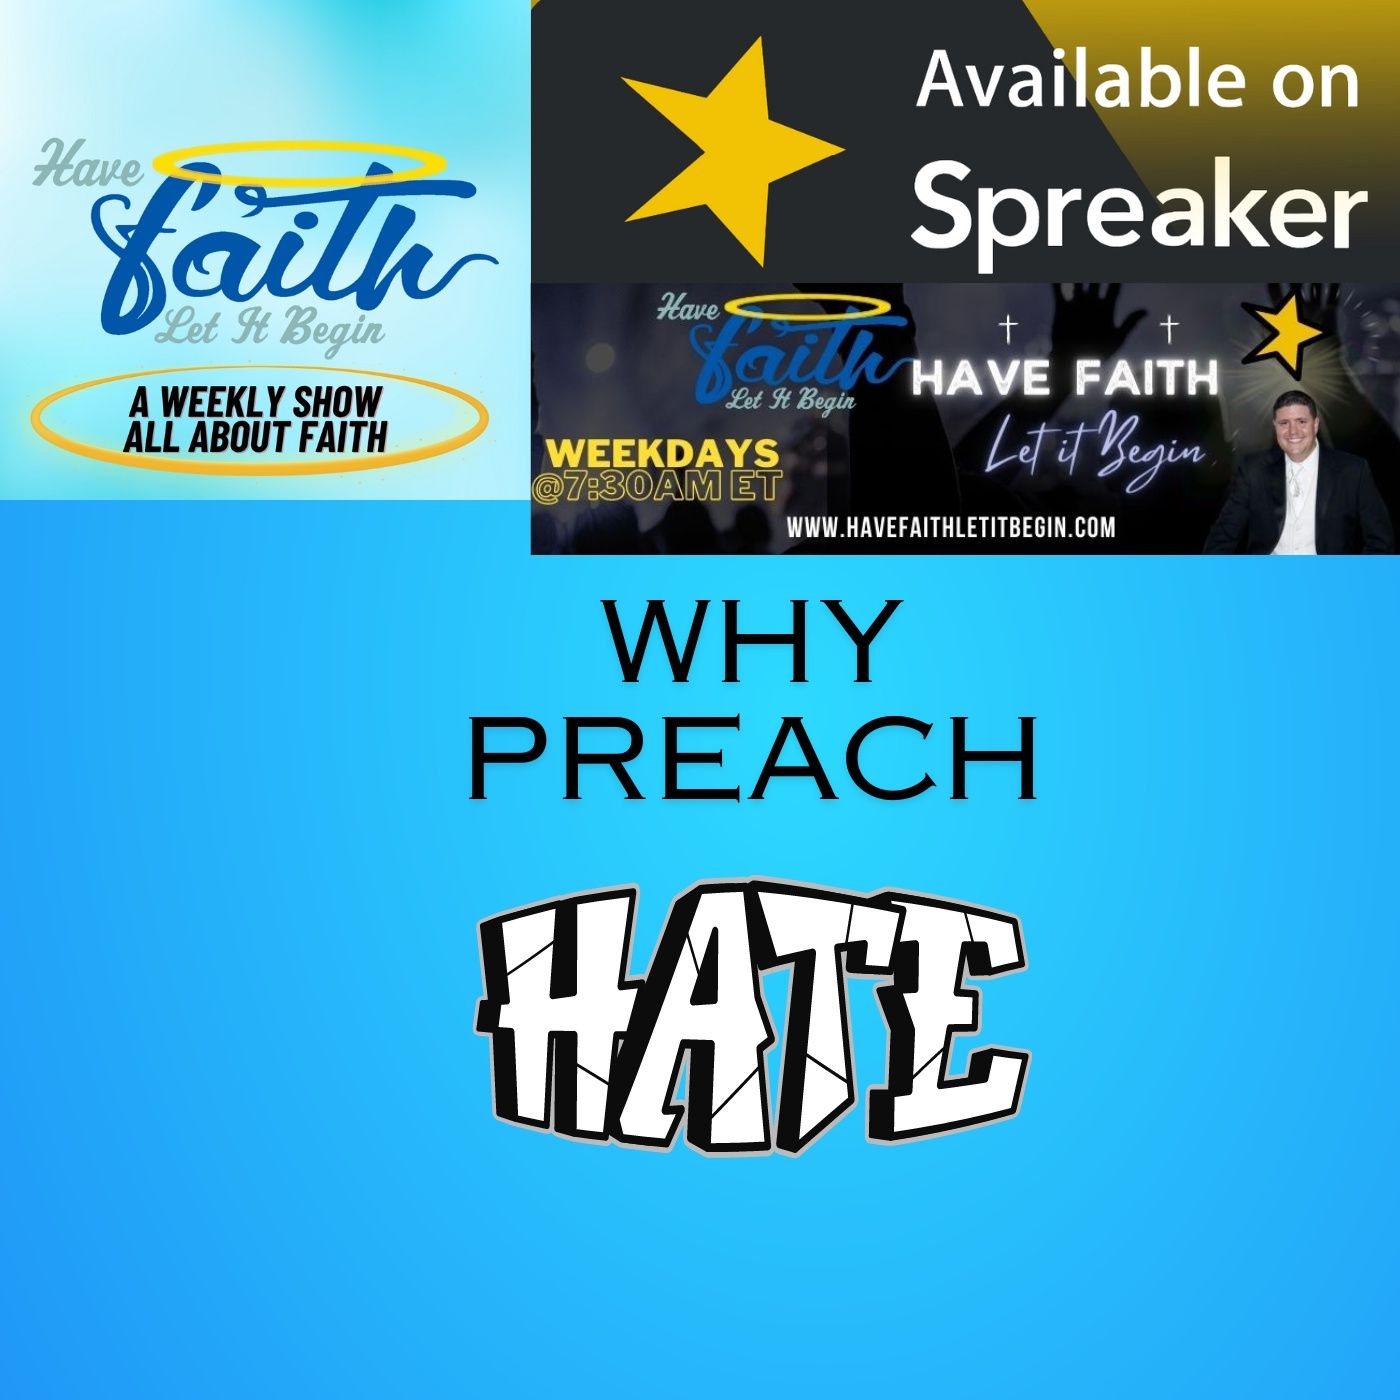 Why preach Hate